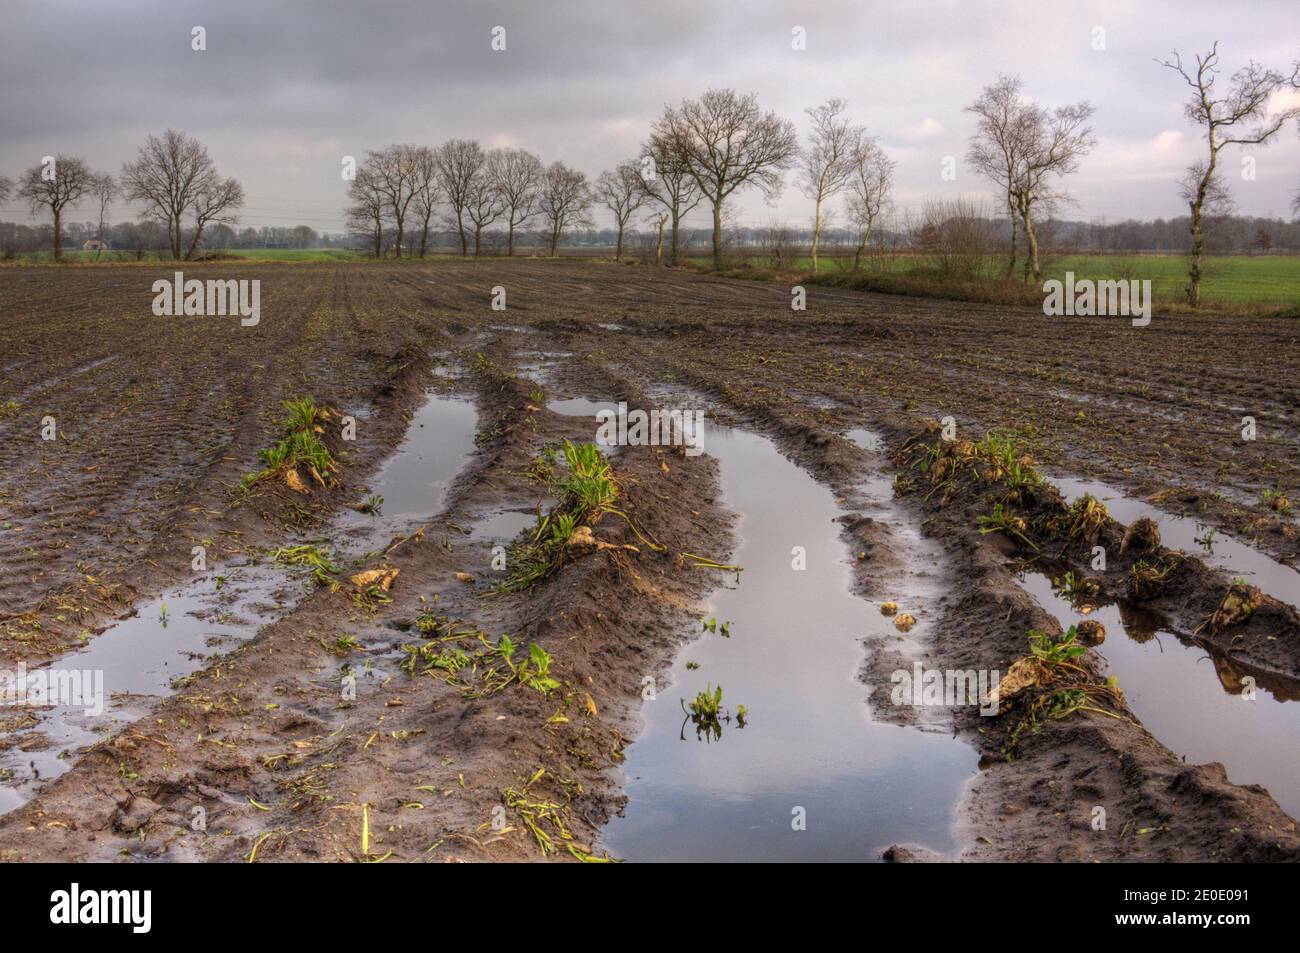 Les sugarbeets ont laissé pendant la récolte sur un terrain boueux en raison du mauvais temps, des flaques partout Banque D'Images